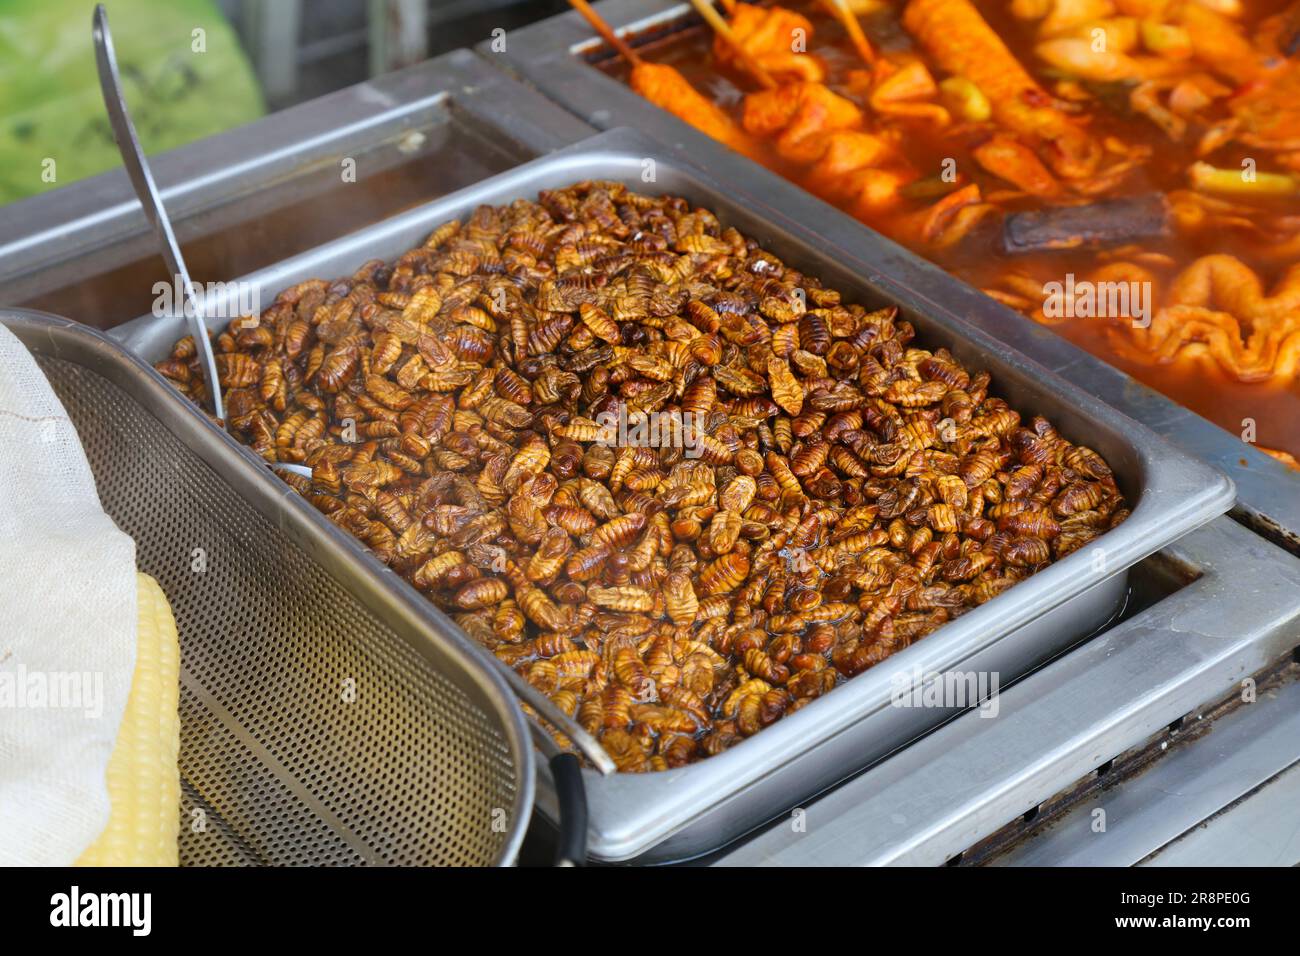 Silkworm pupae - encas de rue à Busan, Corée du Sud. Insectes comme nourriture. Banque D'Images